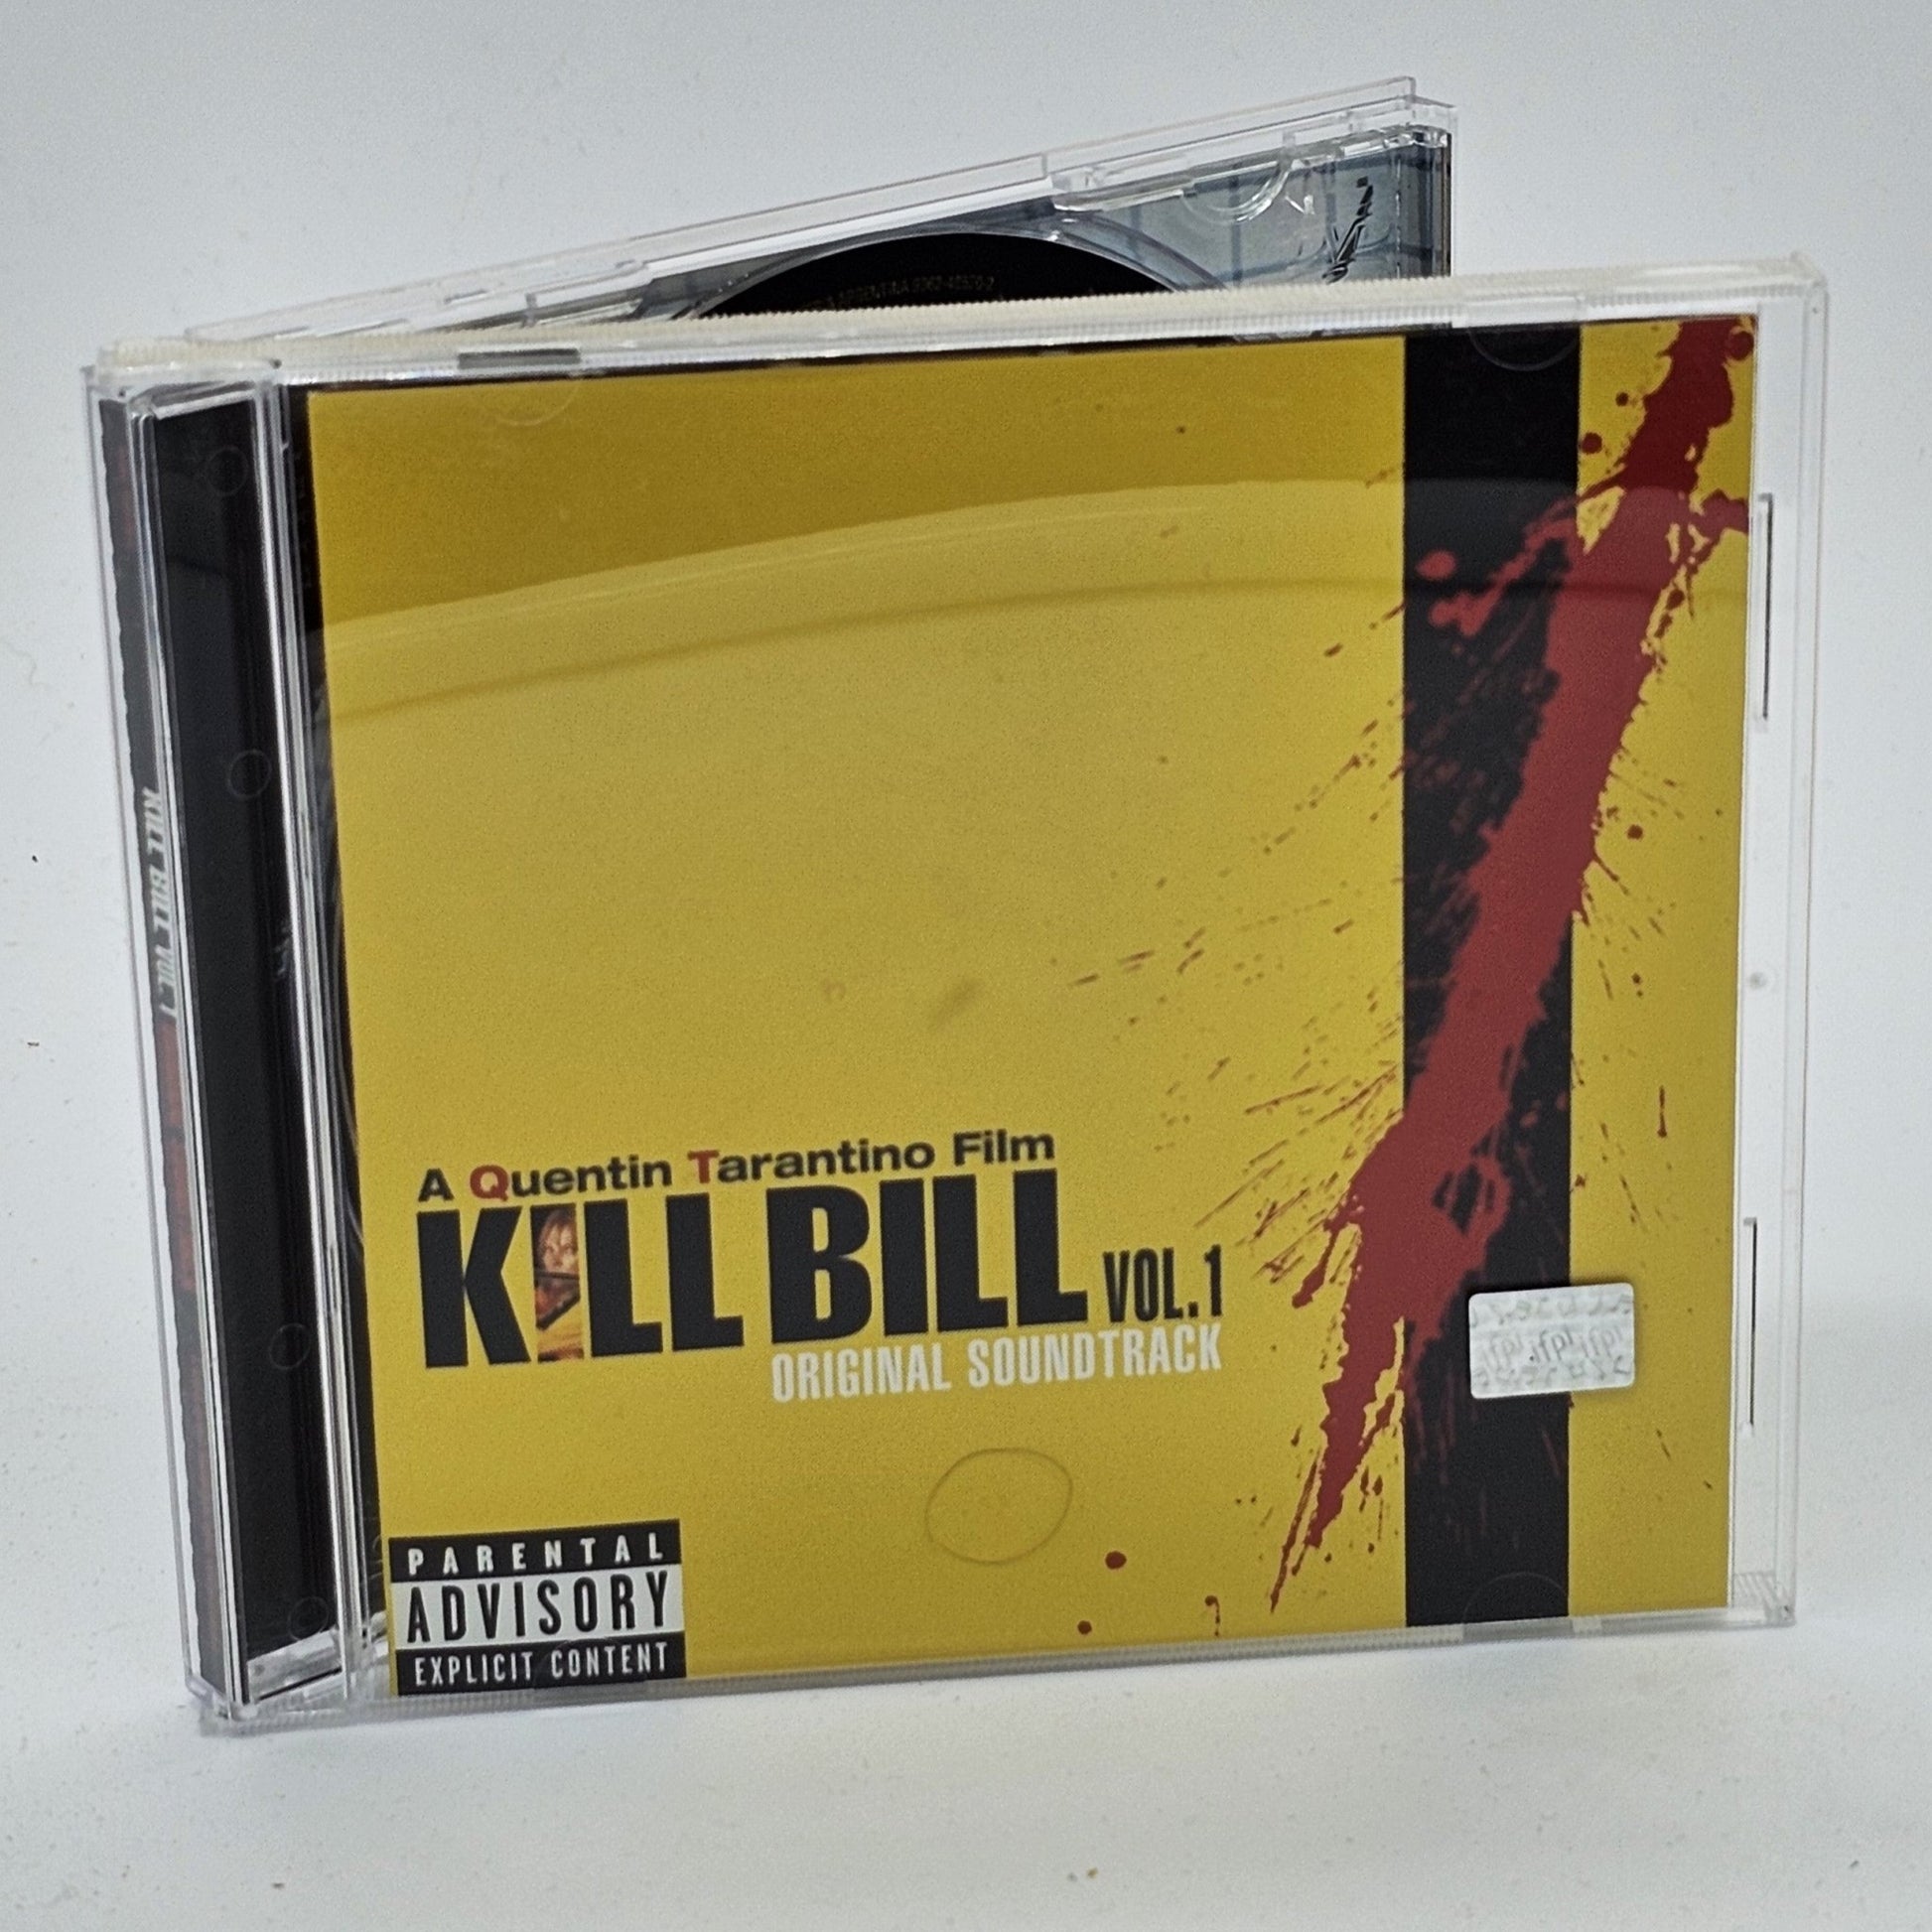 Warner Records - Kill Bill Vol. 1 | Original Soundtrack | CD - Compact Disc - Steady Bunny Shop